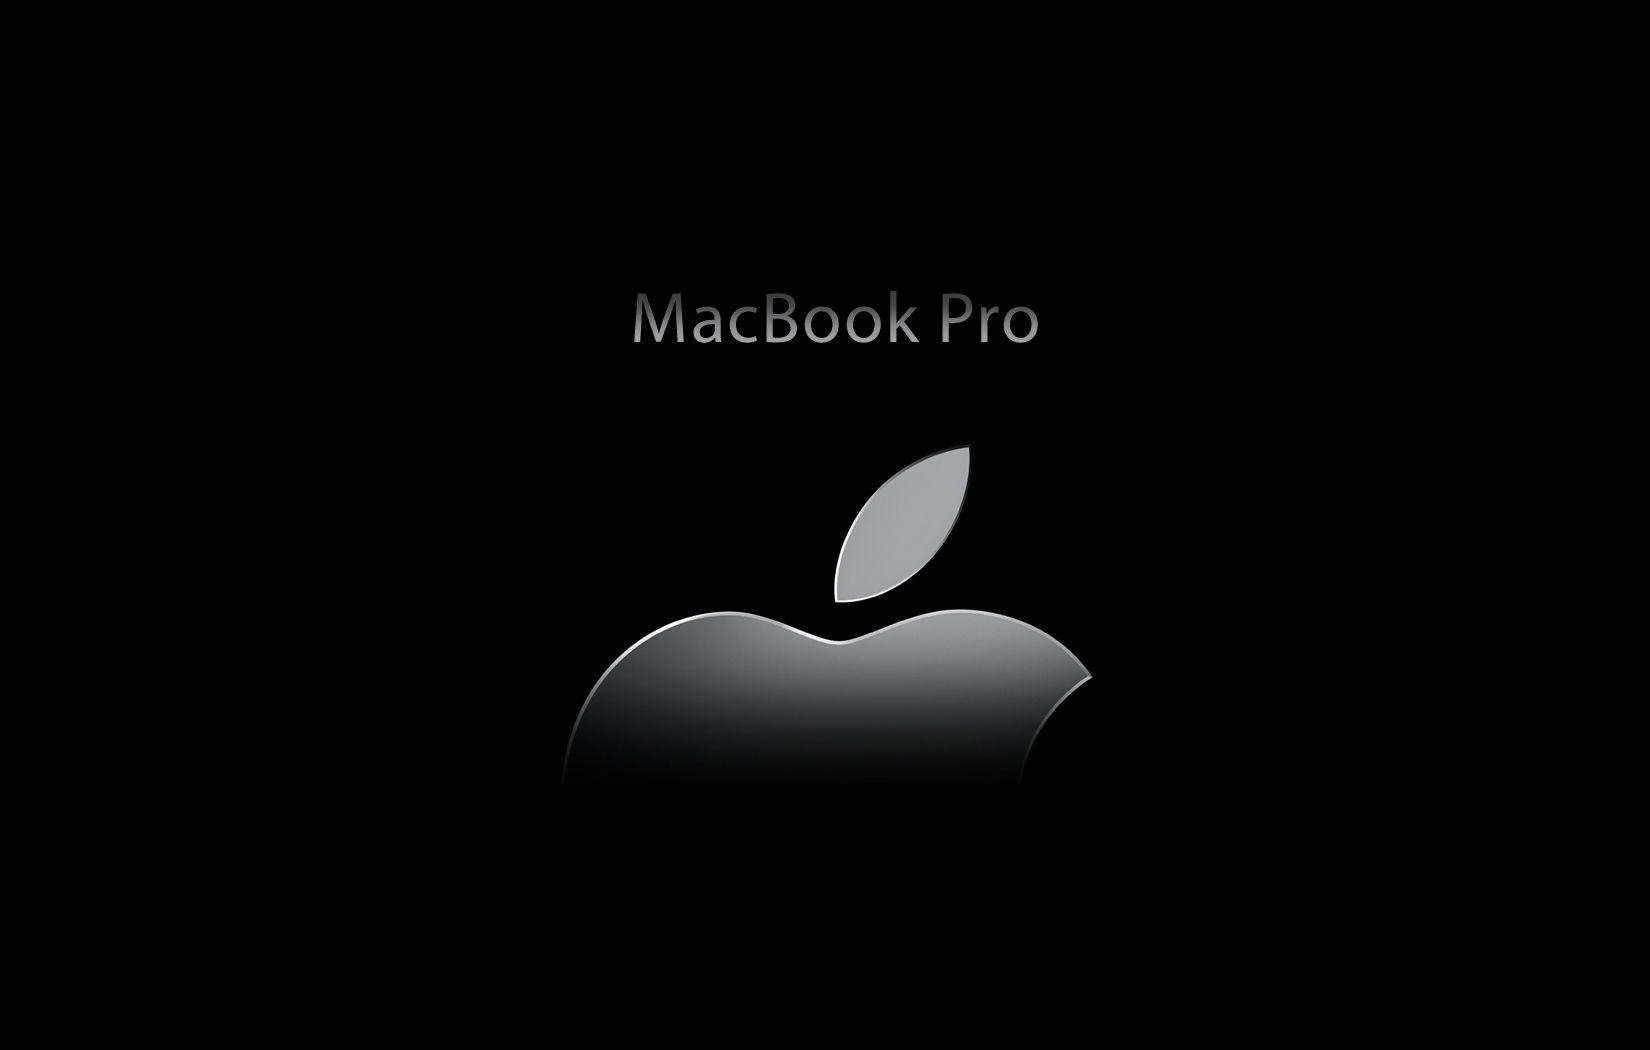 Apple Macbook Pro Black Wallpaper .setaswall.com